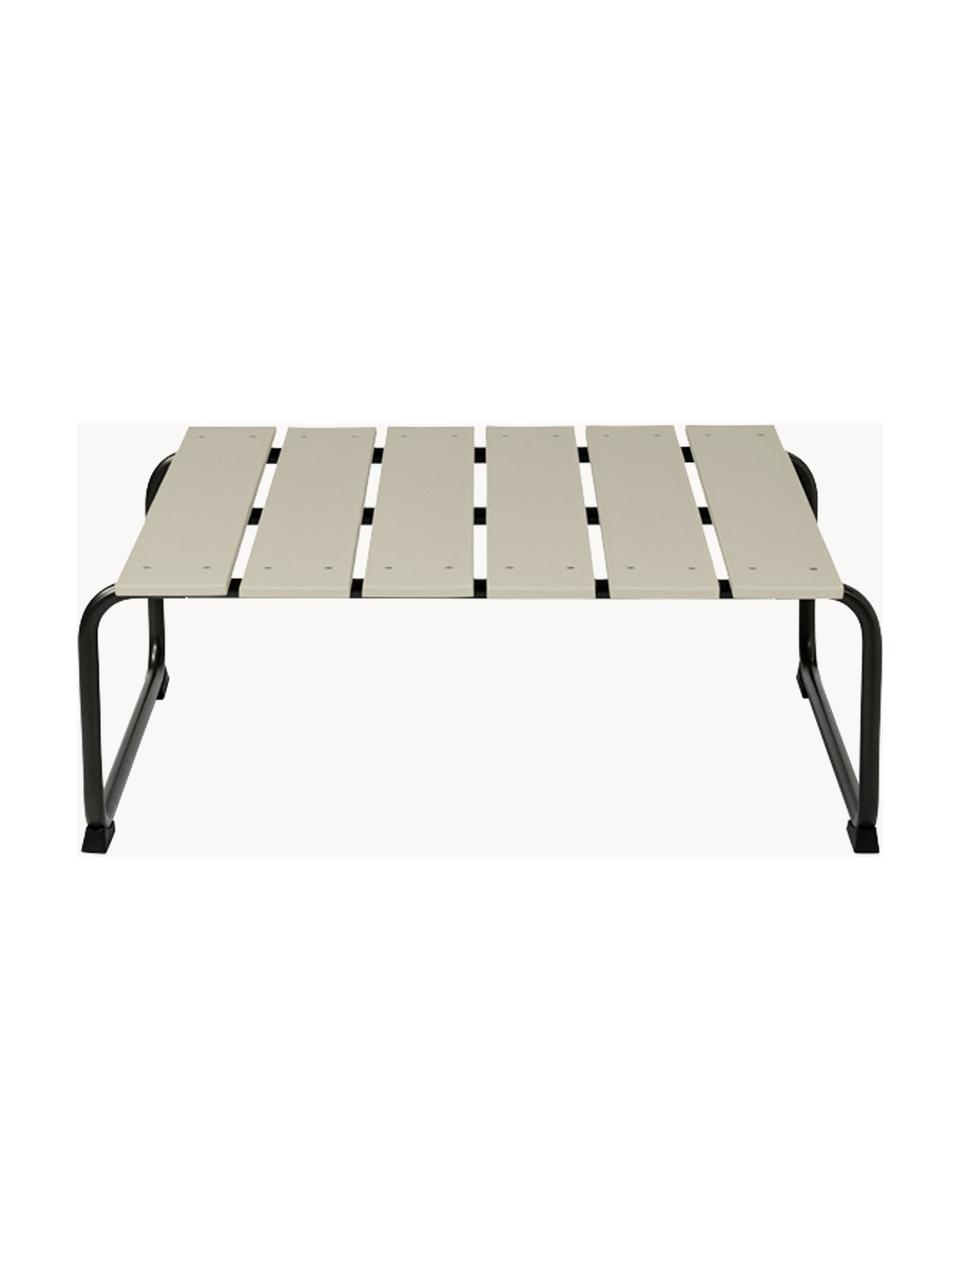 Tavolino da giardino fatto a mano Ocean, Struttura: acciaio riciclato, rivest, Beige chiaro, nero, Larg. 79 x Prof. 70 cm